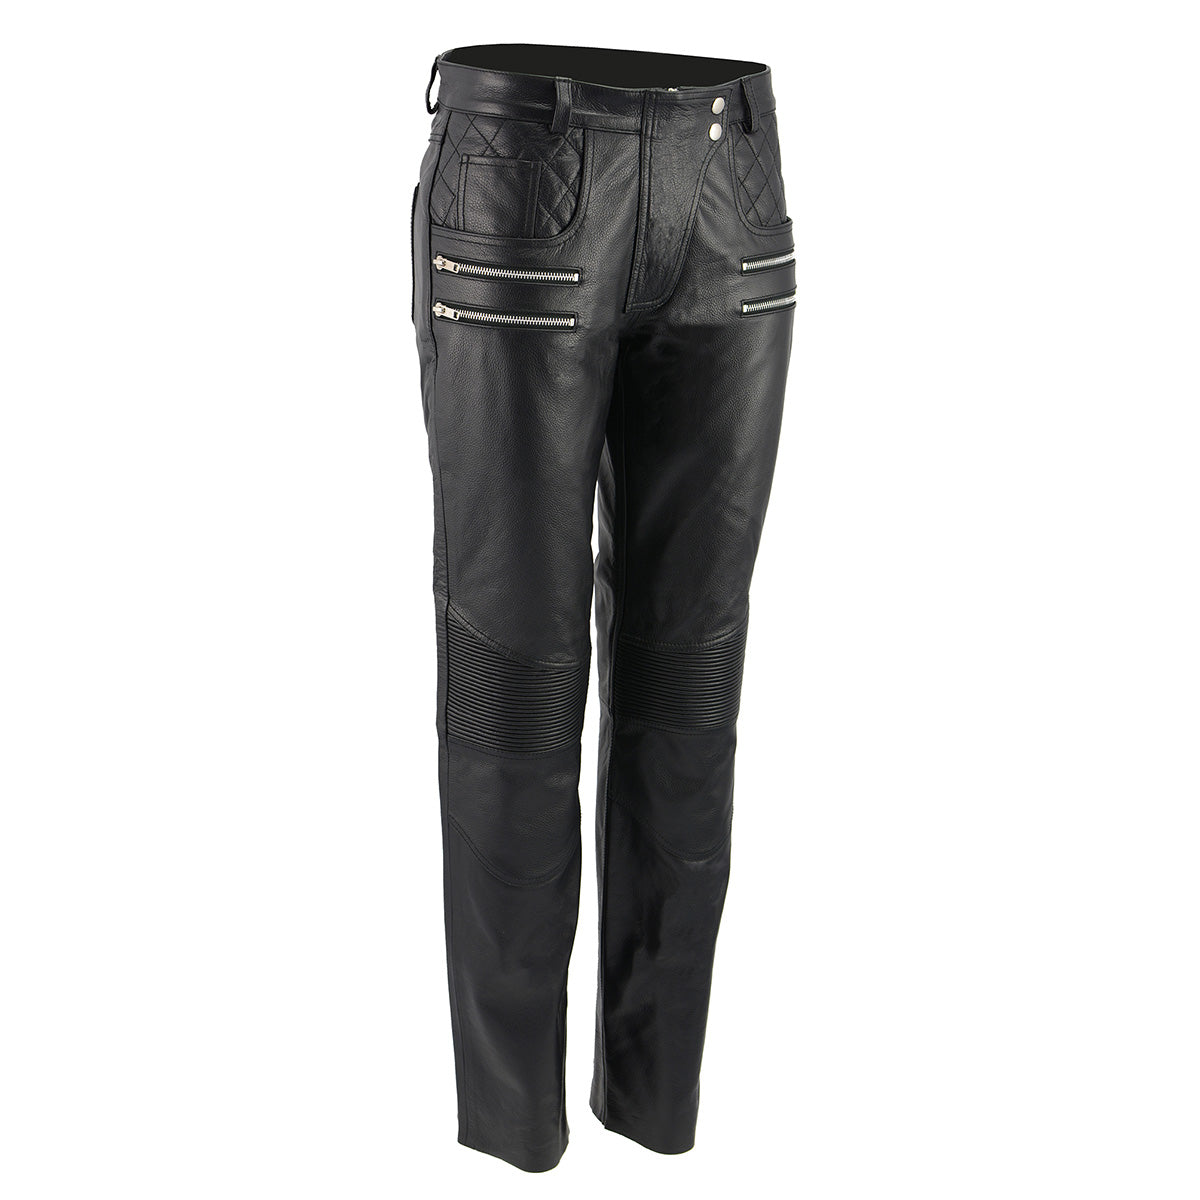 Vixen - Women's Leather Pants